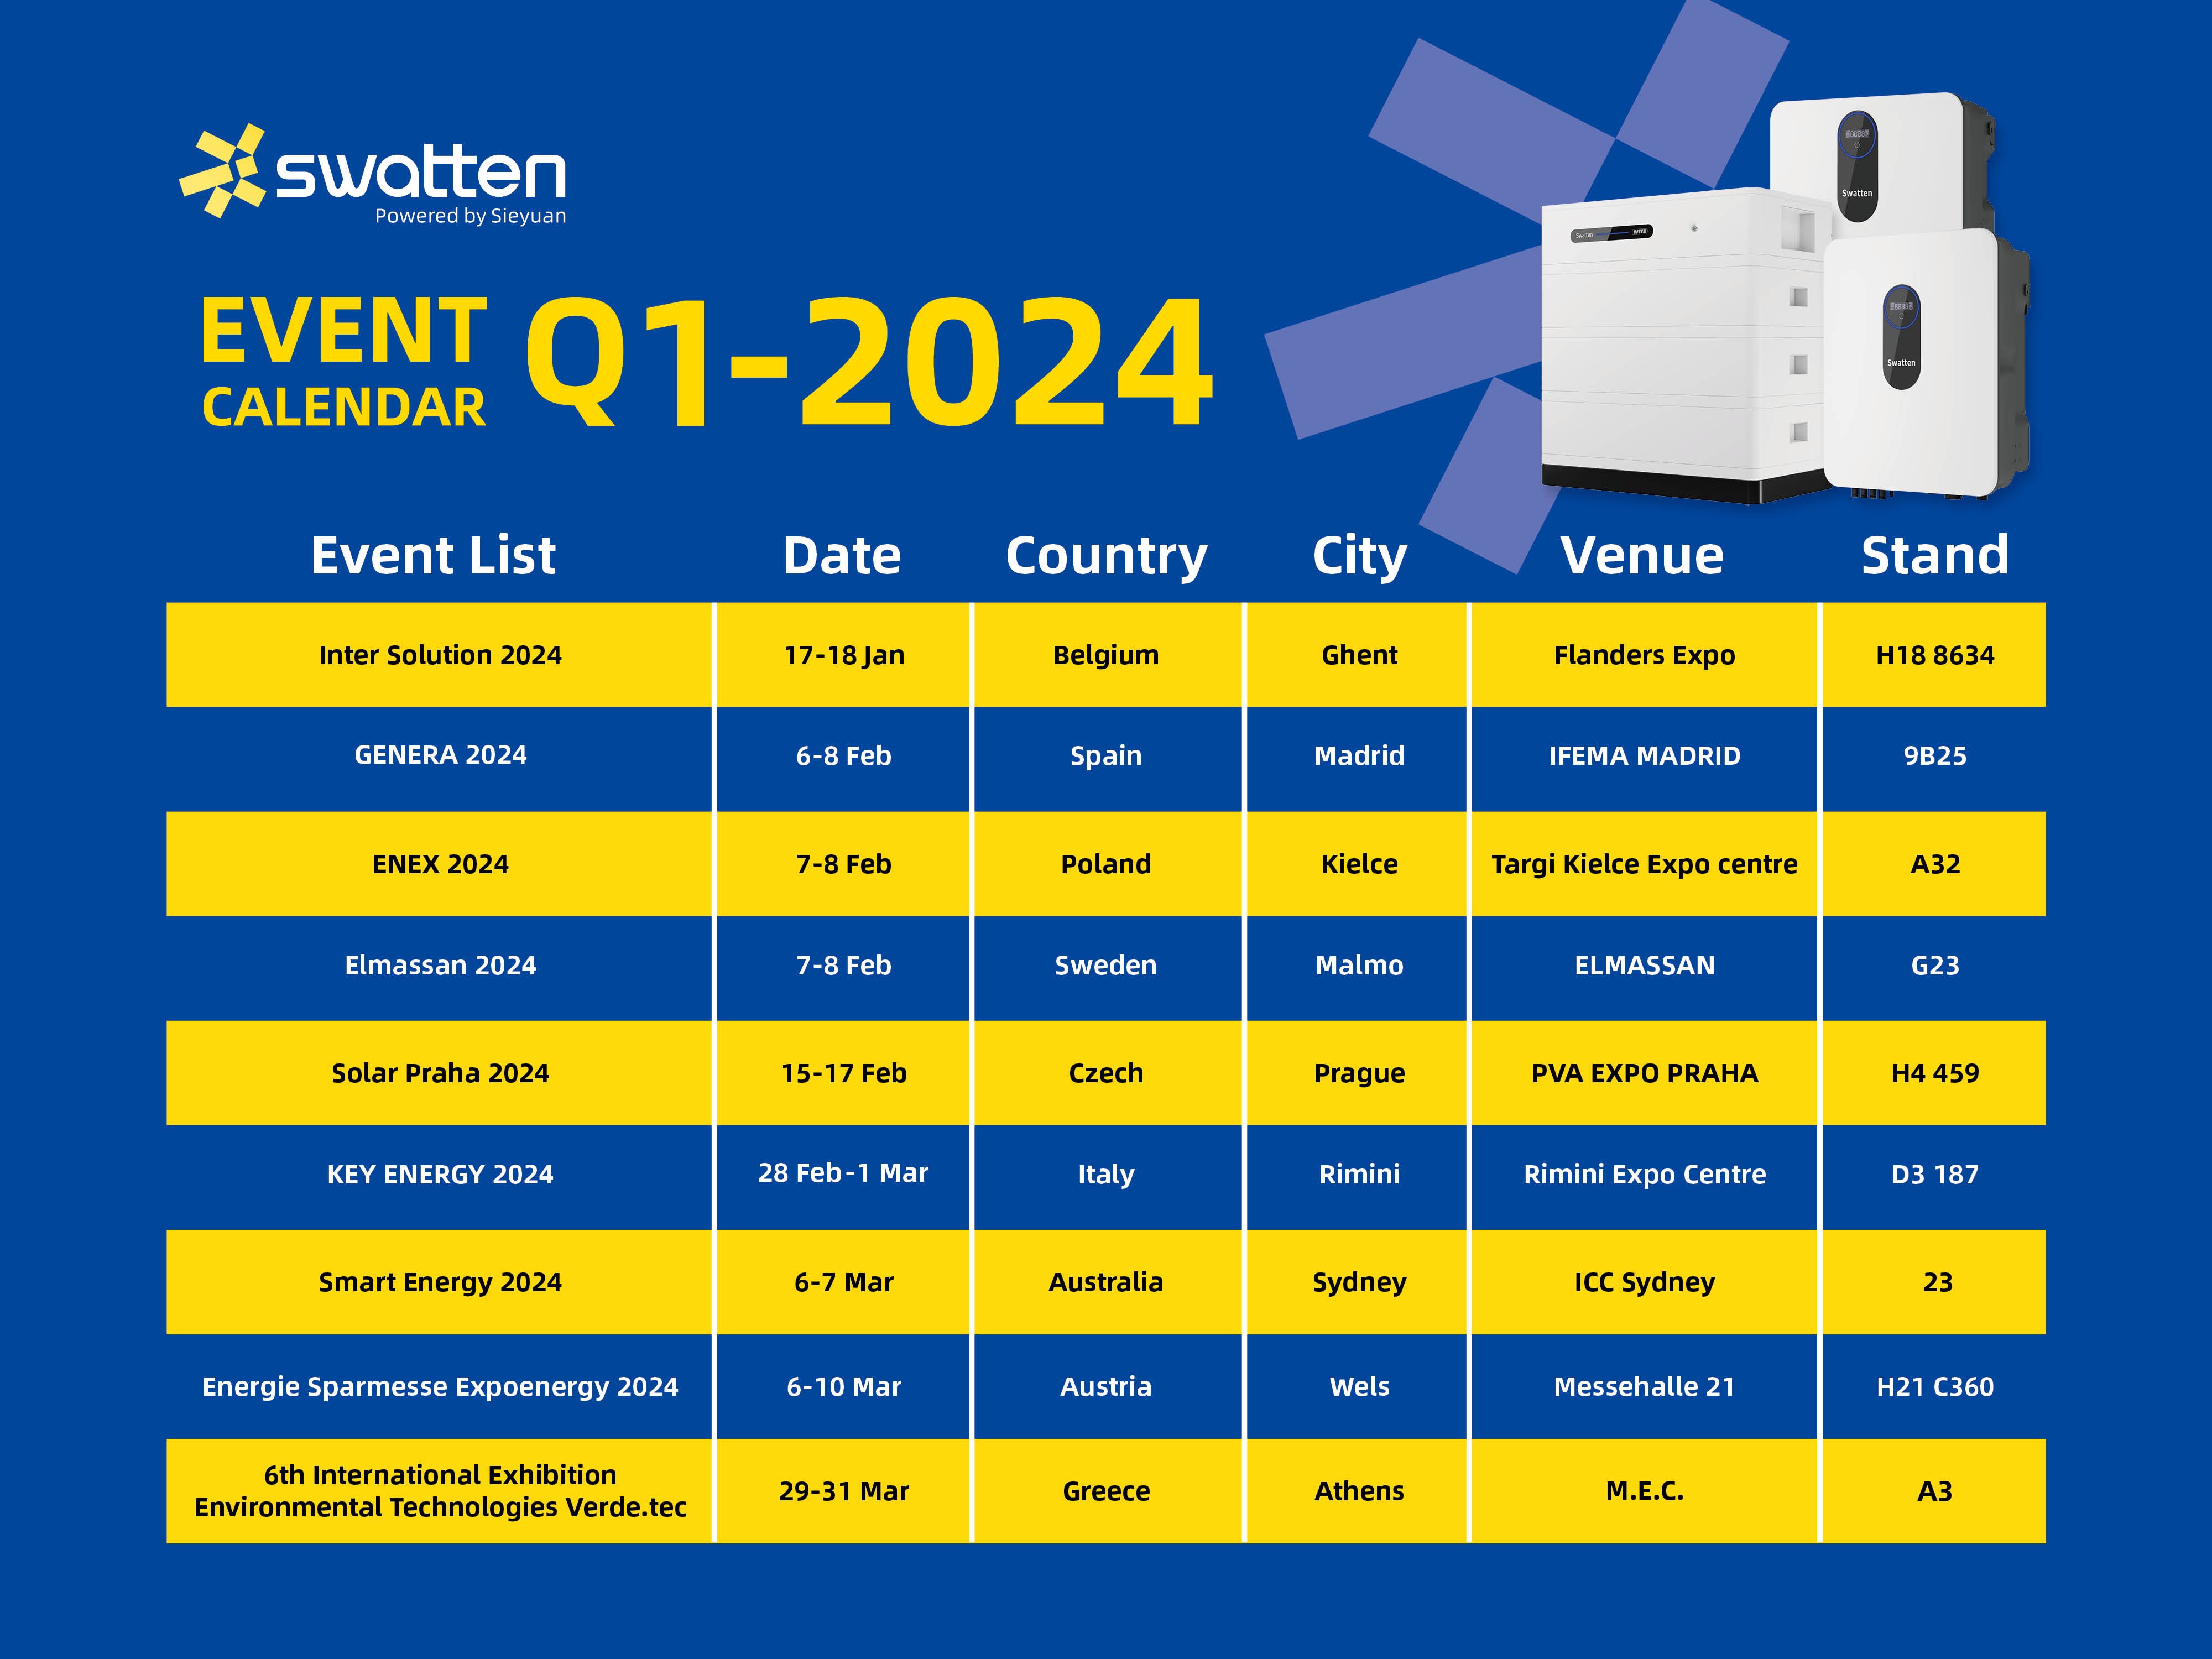 Swatten Q1-2024 Exhibition Calendar